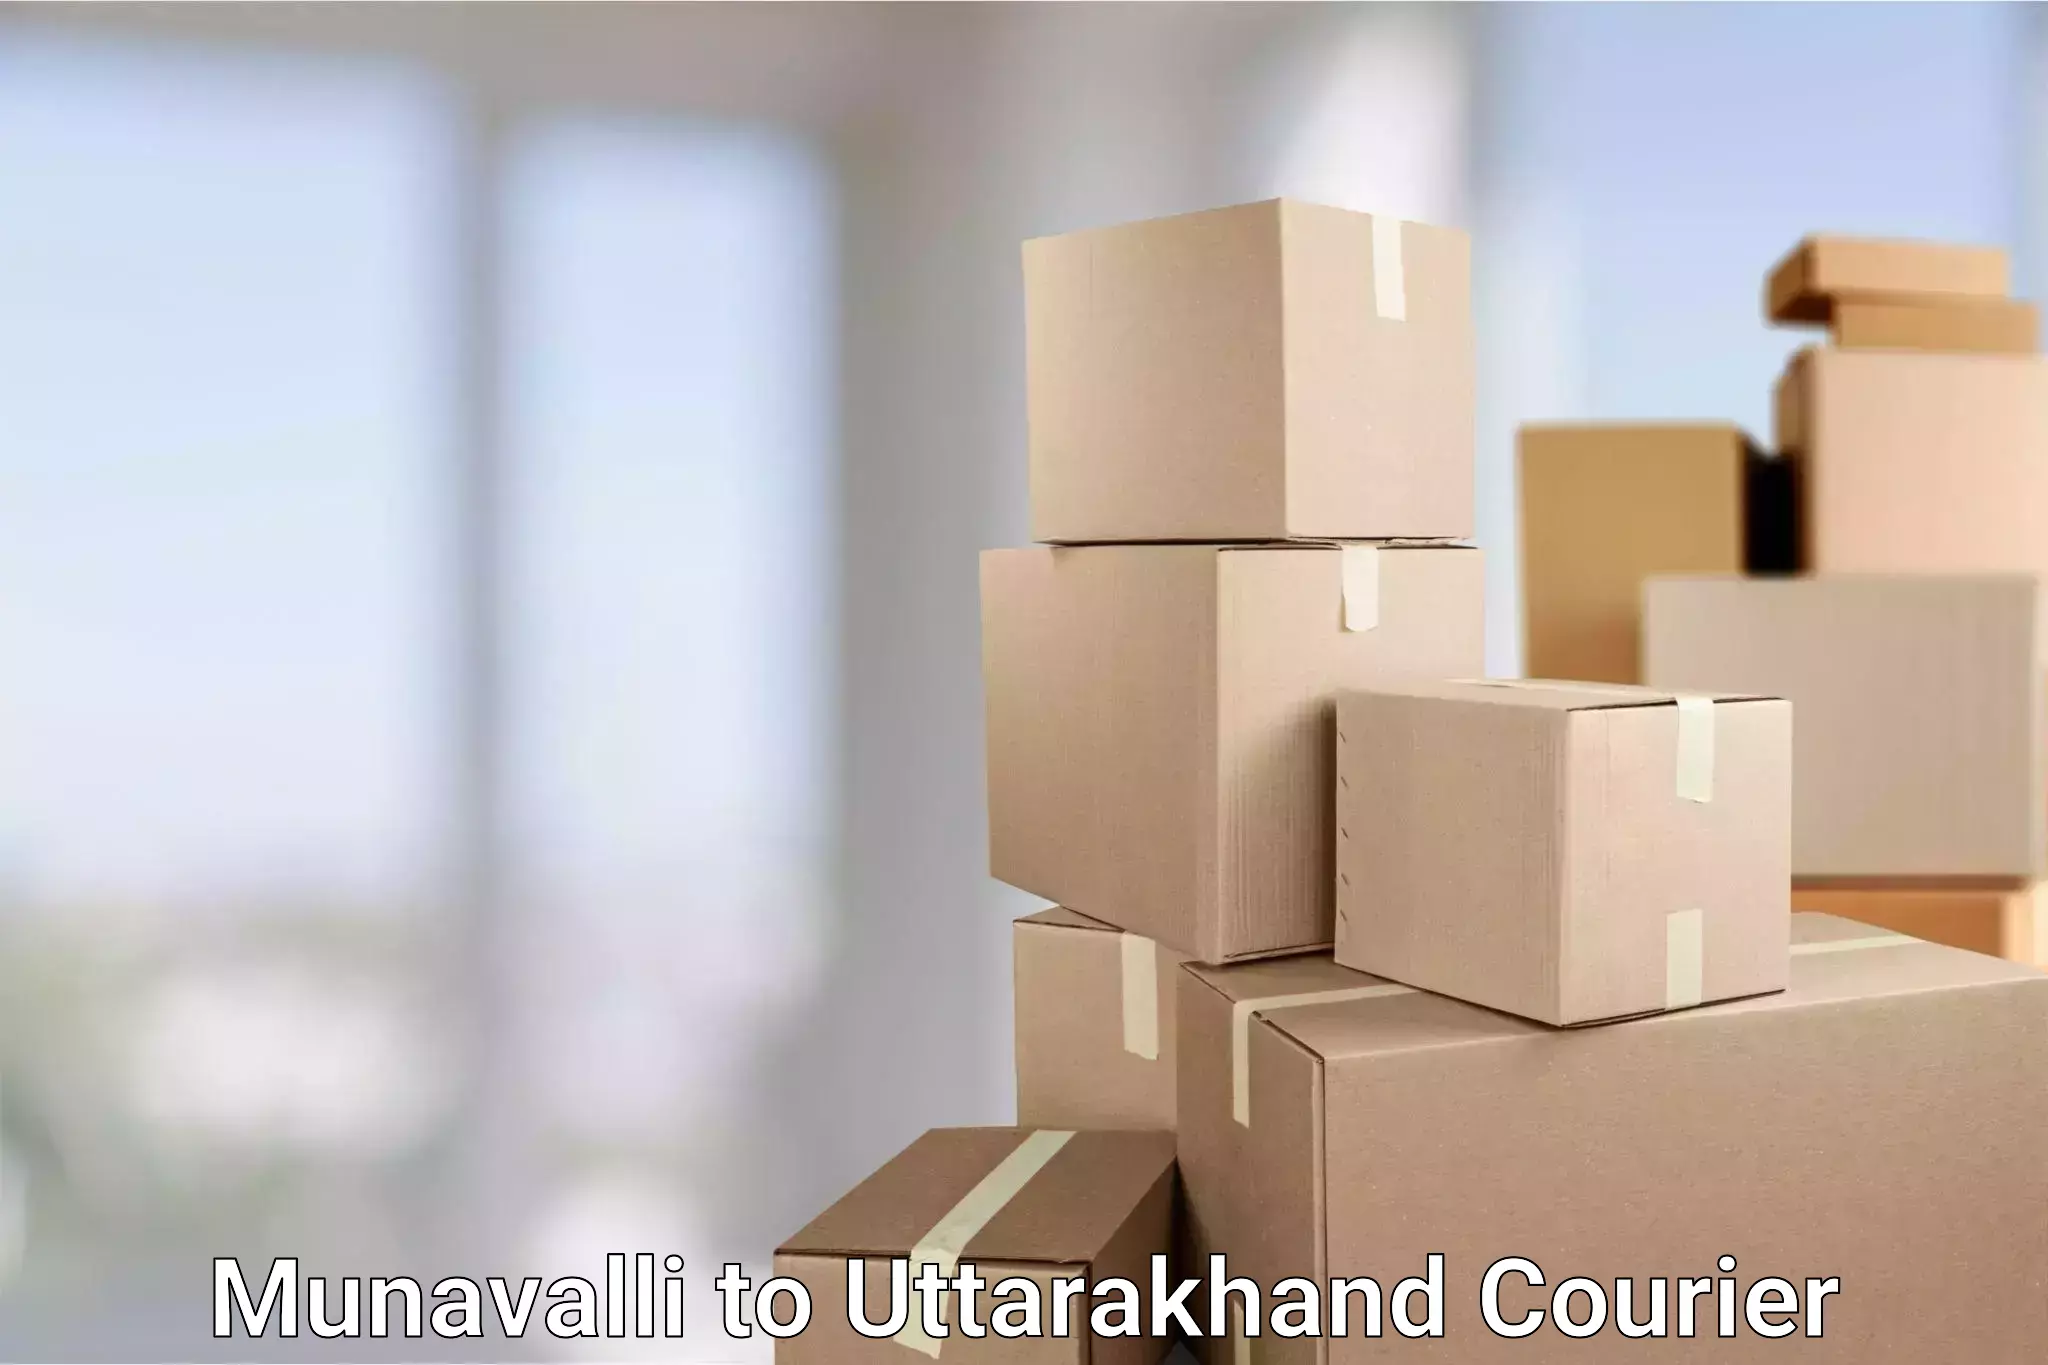 Efficient cargo handling Munavalli to Uttarakhand